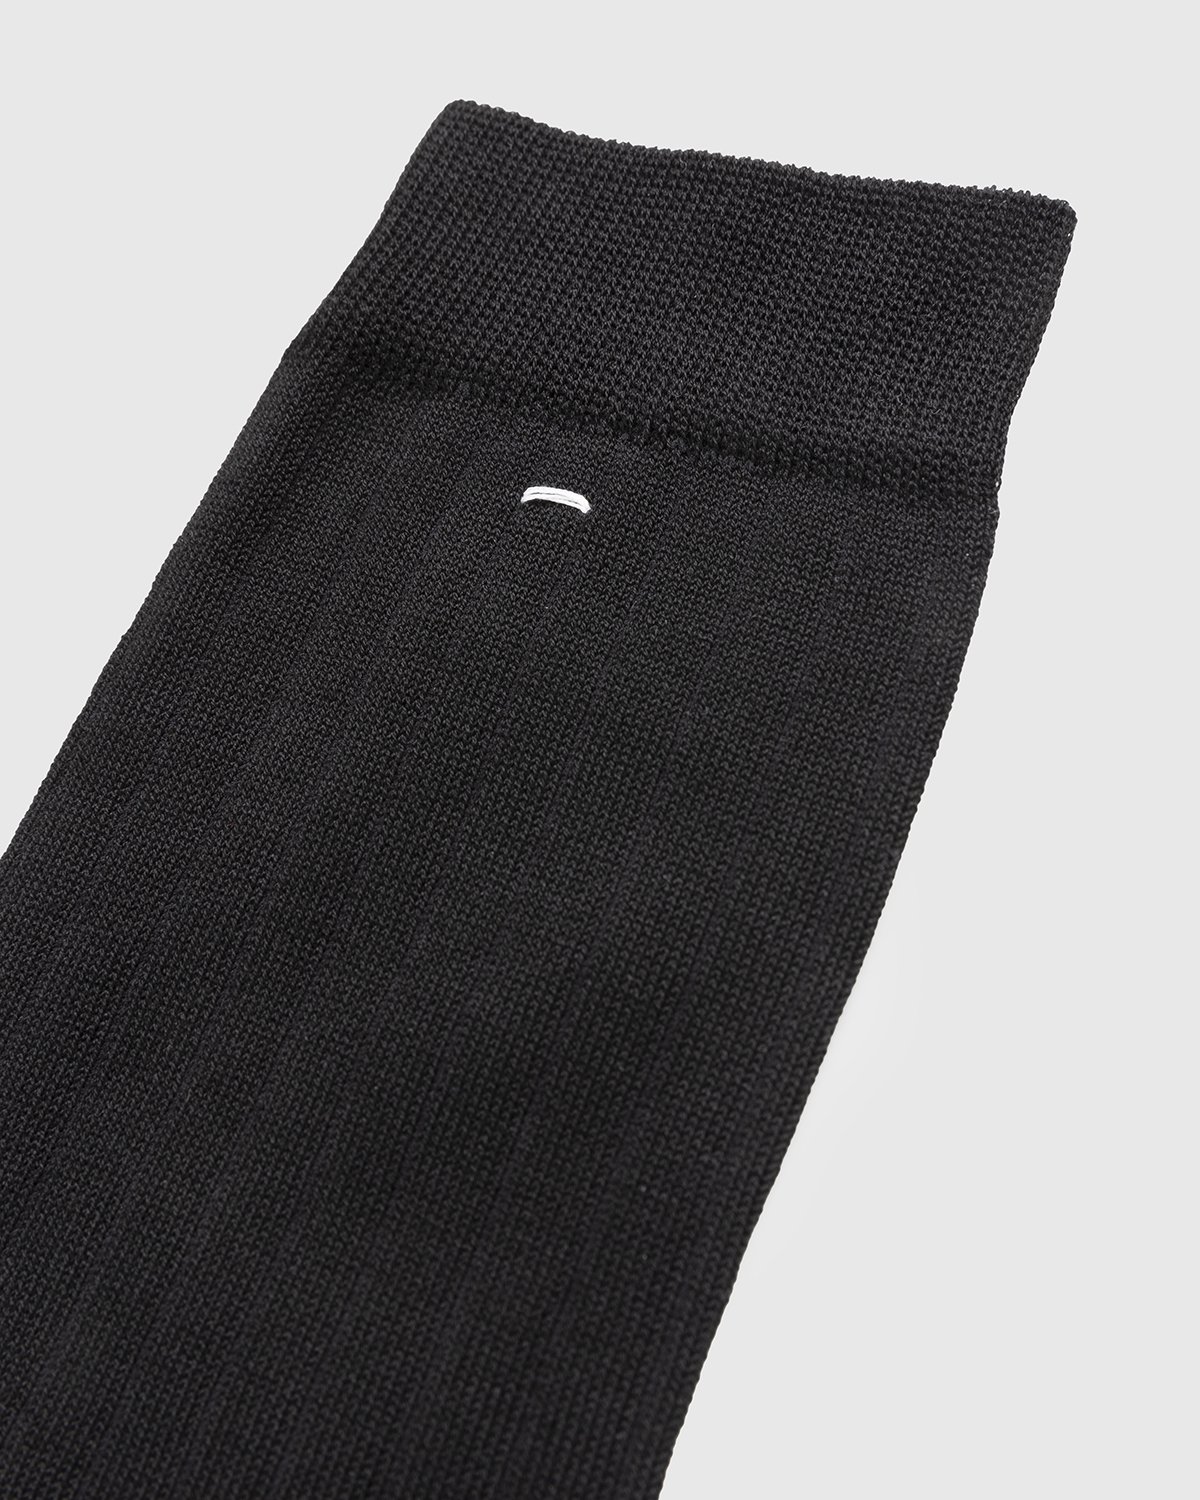 Maison Margiela - Tabi Socks Black - Accessories - Black - Image 4